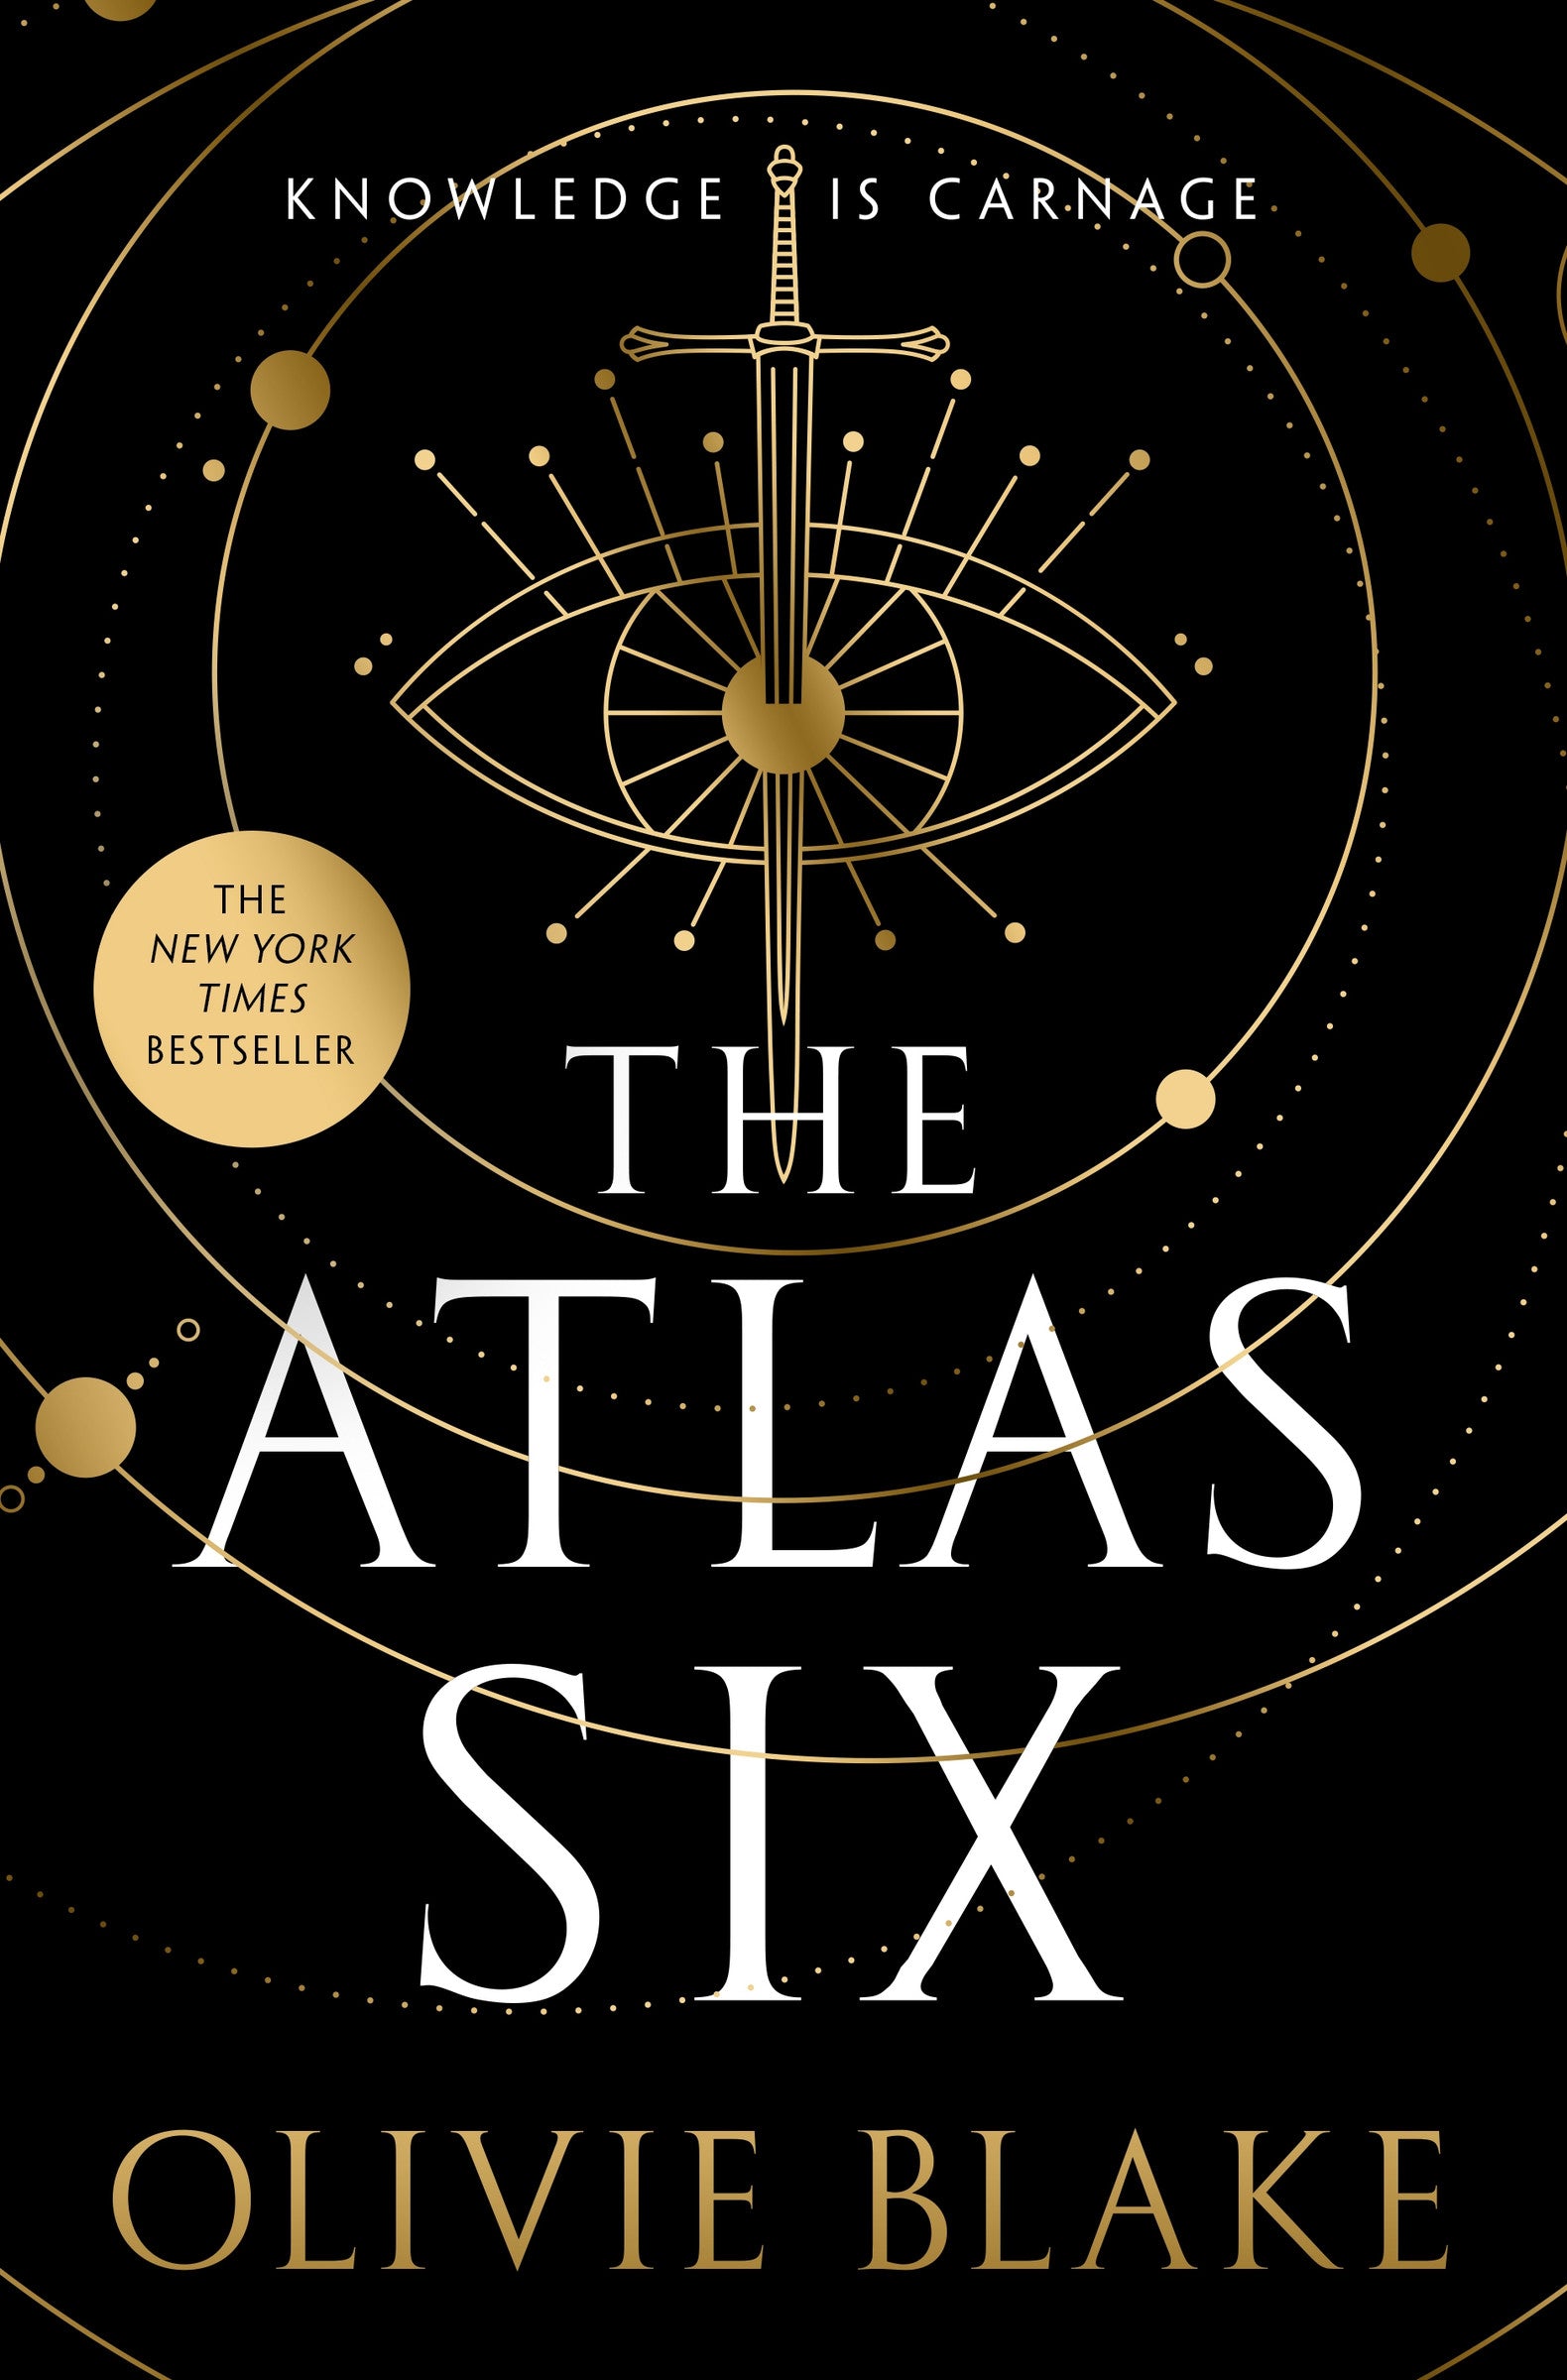 Atlas Six